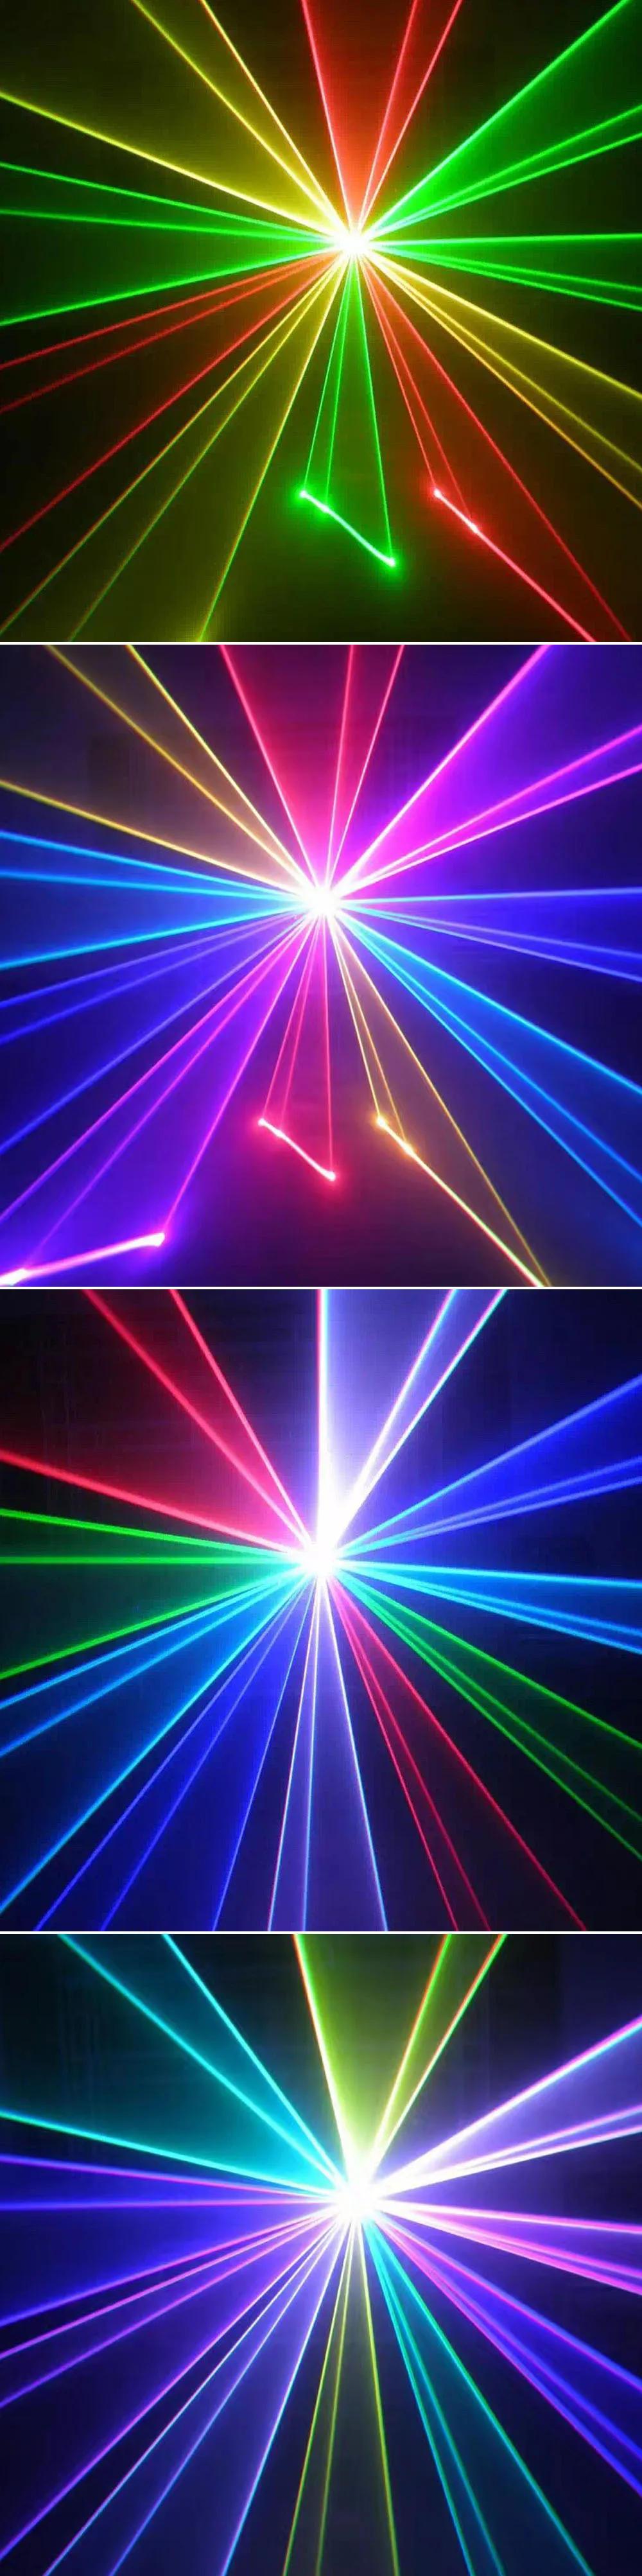 Цветная(RGB) 5 Вт(2/3/4/8/10 Вт) DMX512 этапа лазерный светильник влияние проектор светильник par DJ танец бар Xmas вечерние диско шоу светильник s